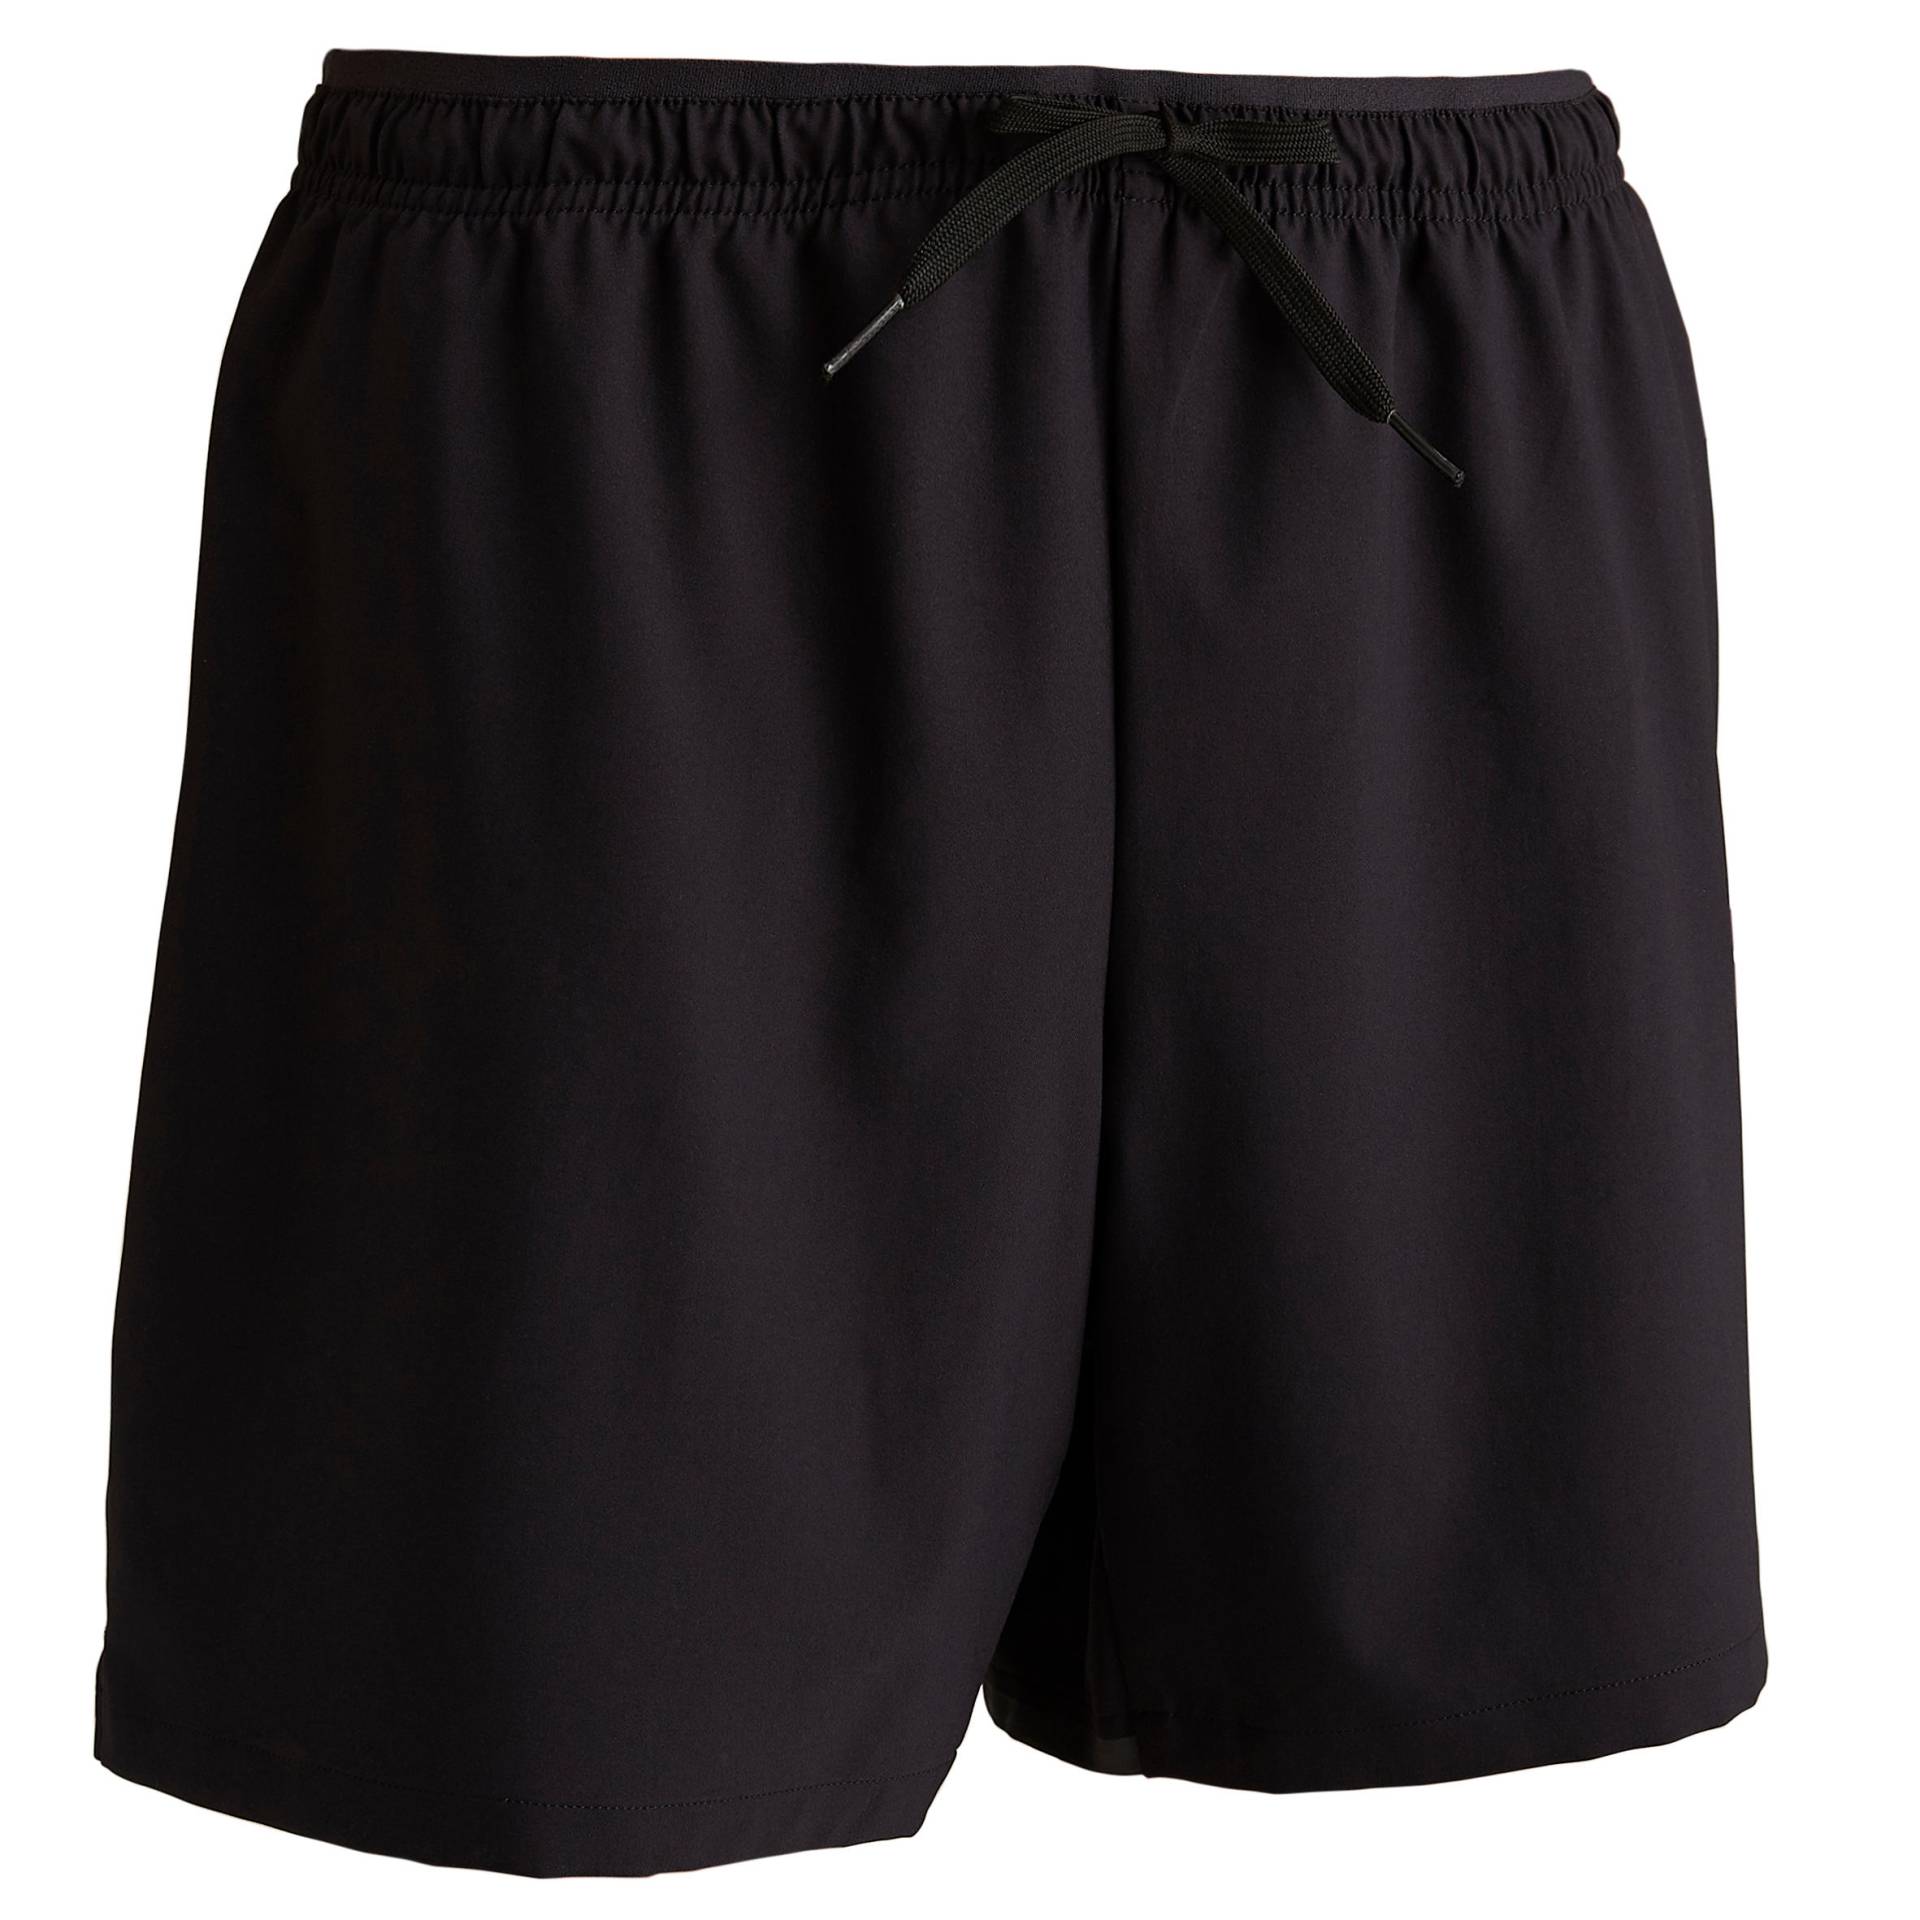 Damen Fussball Shorts - Viralto schwarz von KIPSTA